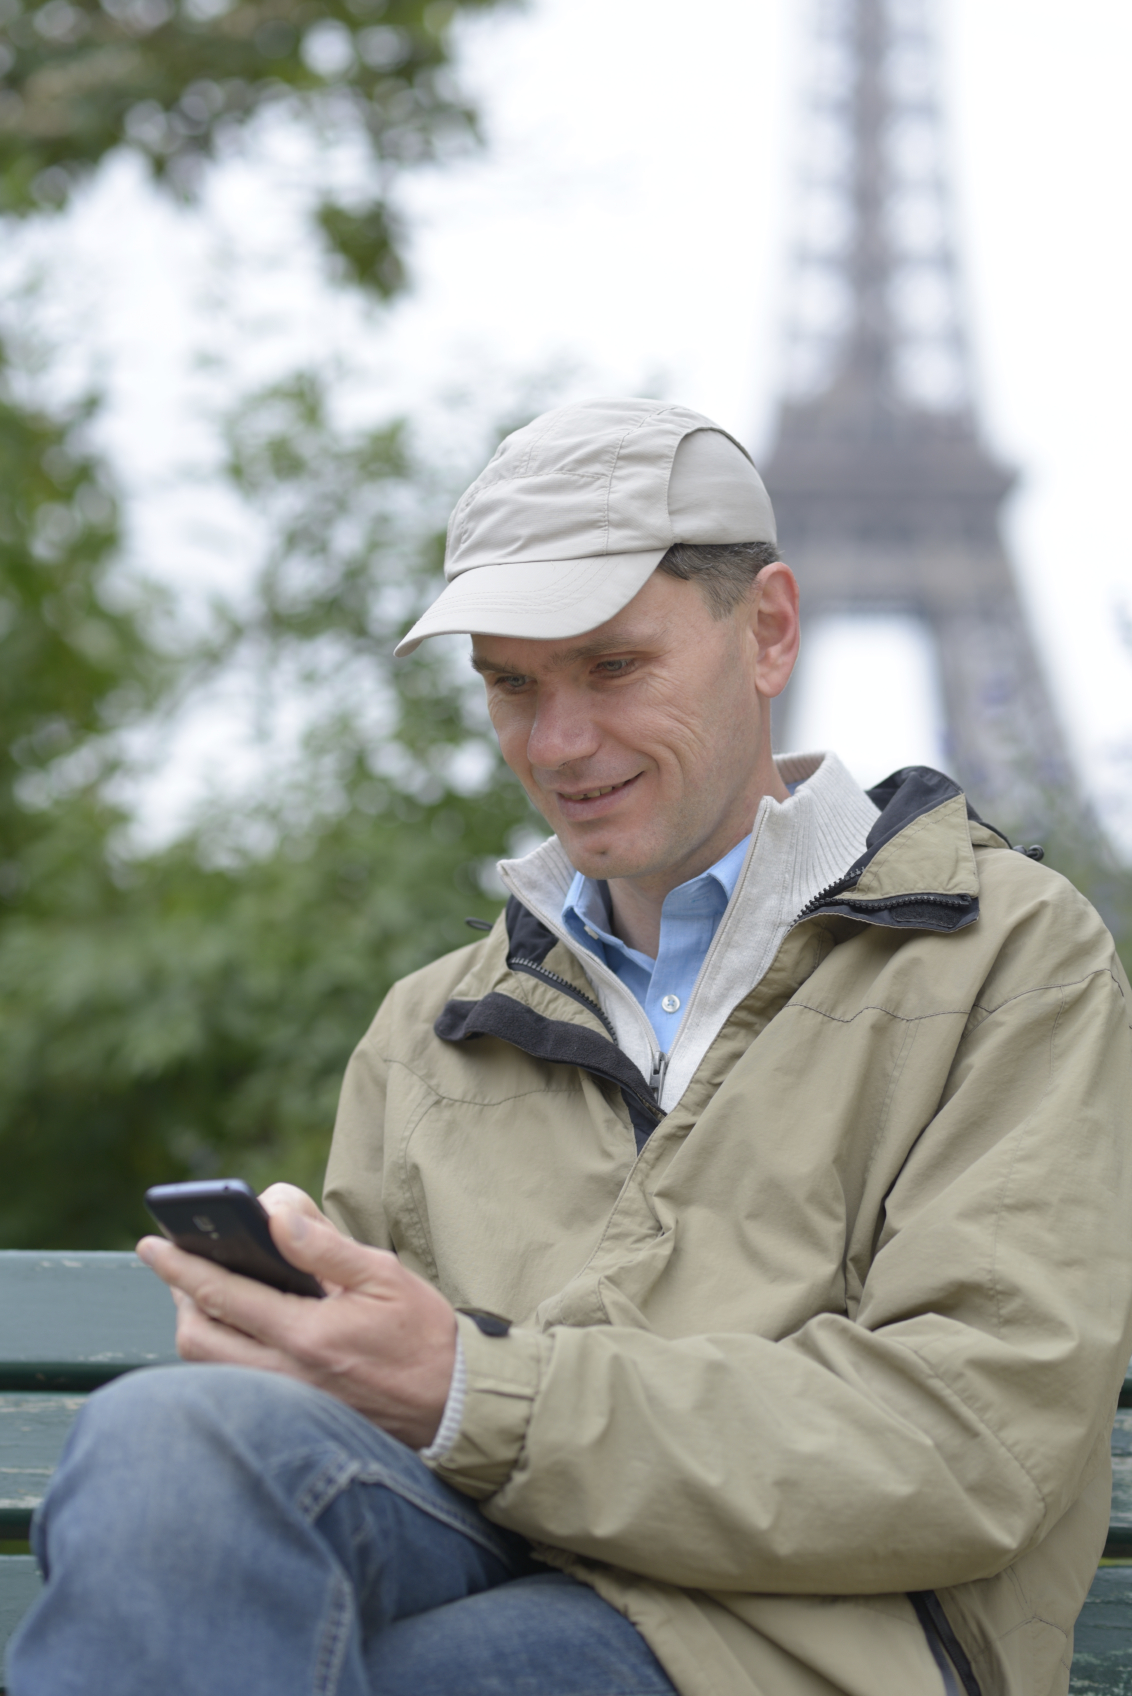 Tourist in Paris, France